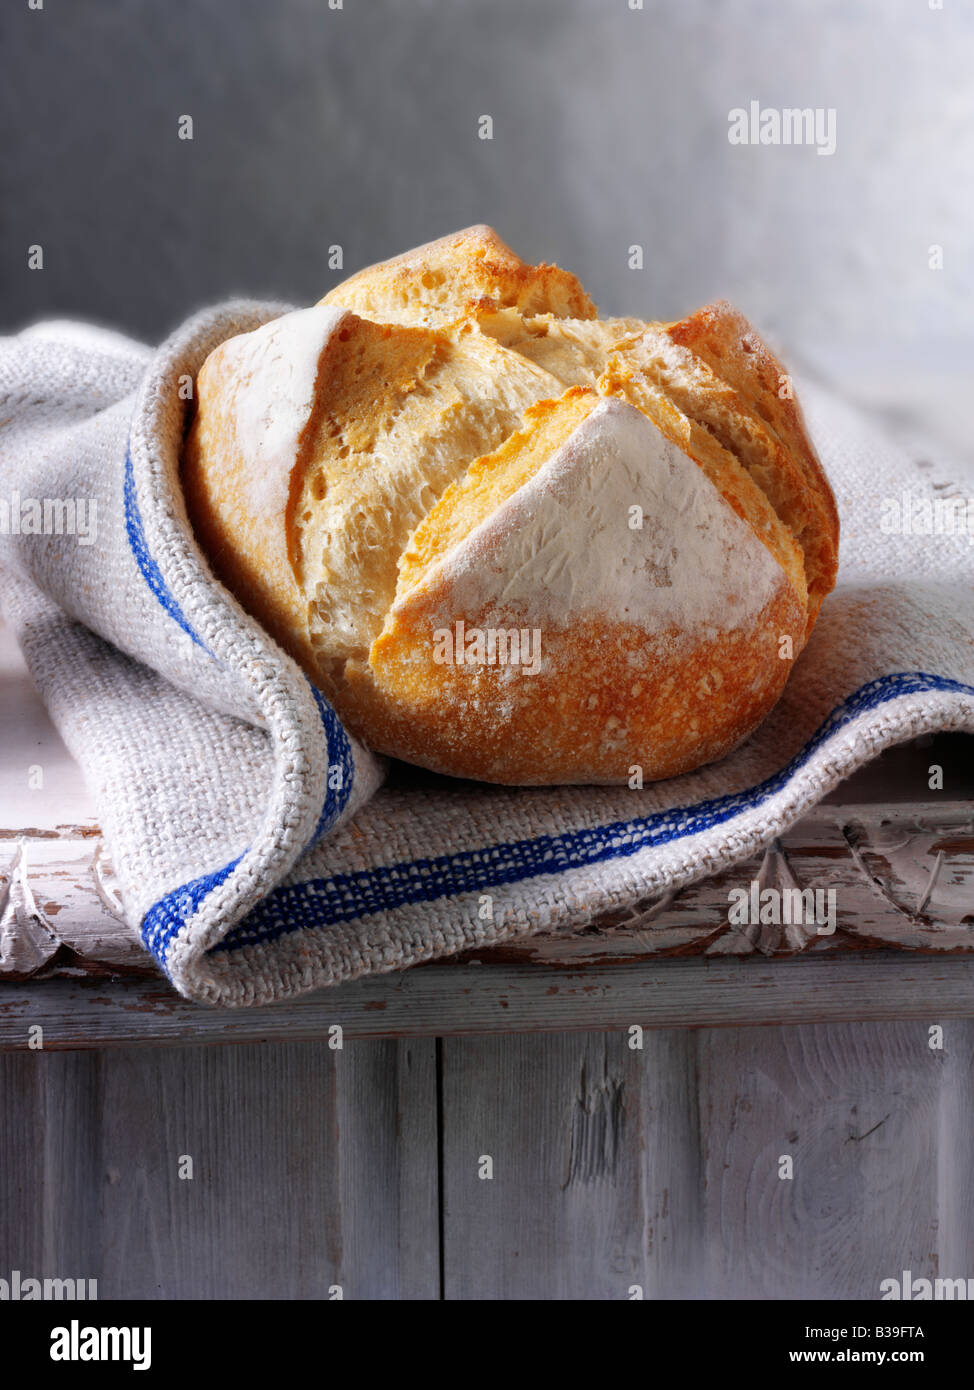 Pain blanc artisanal - pain pain pain pain pain au Levain dans un cadre rustique Banque D'Images